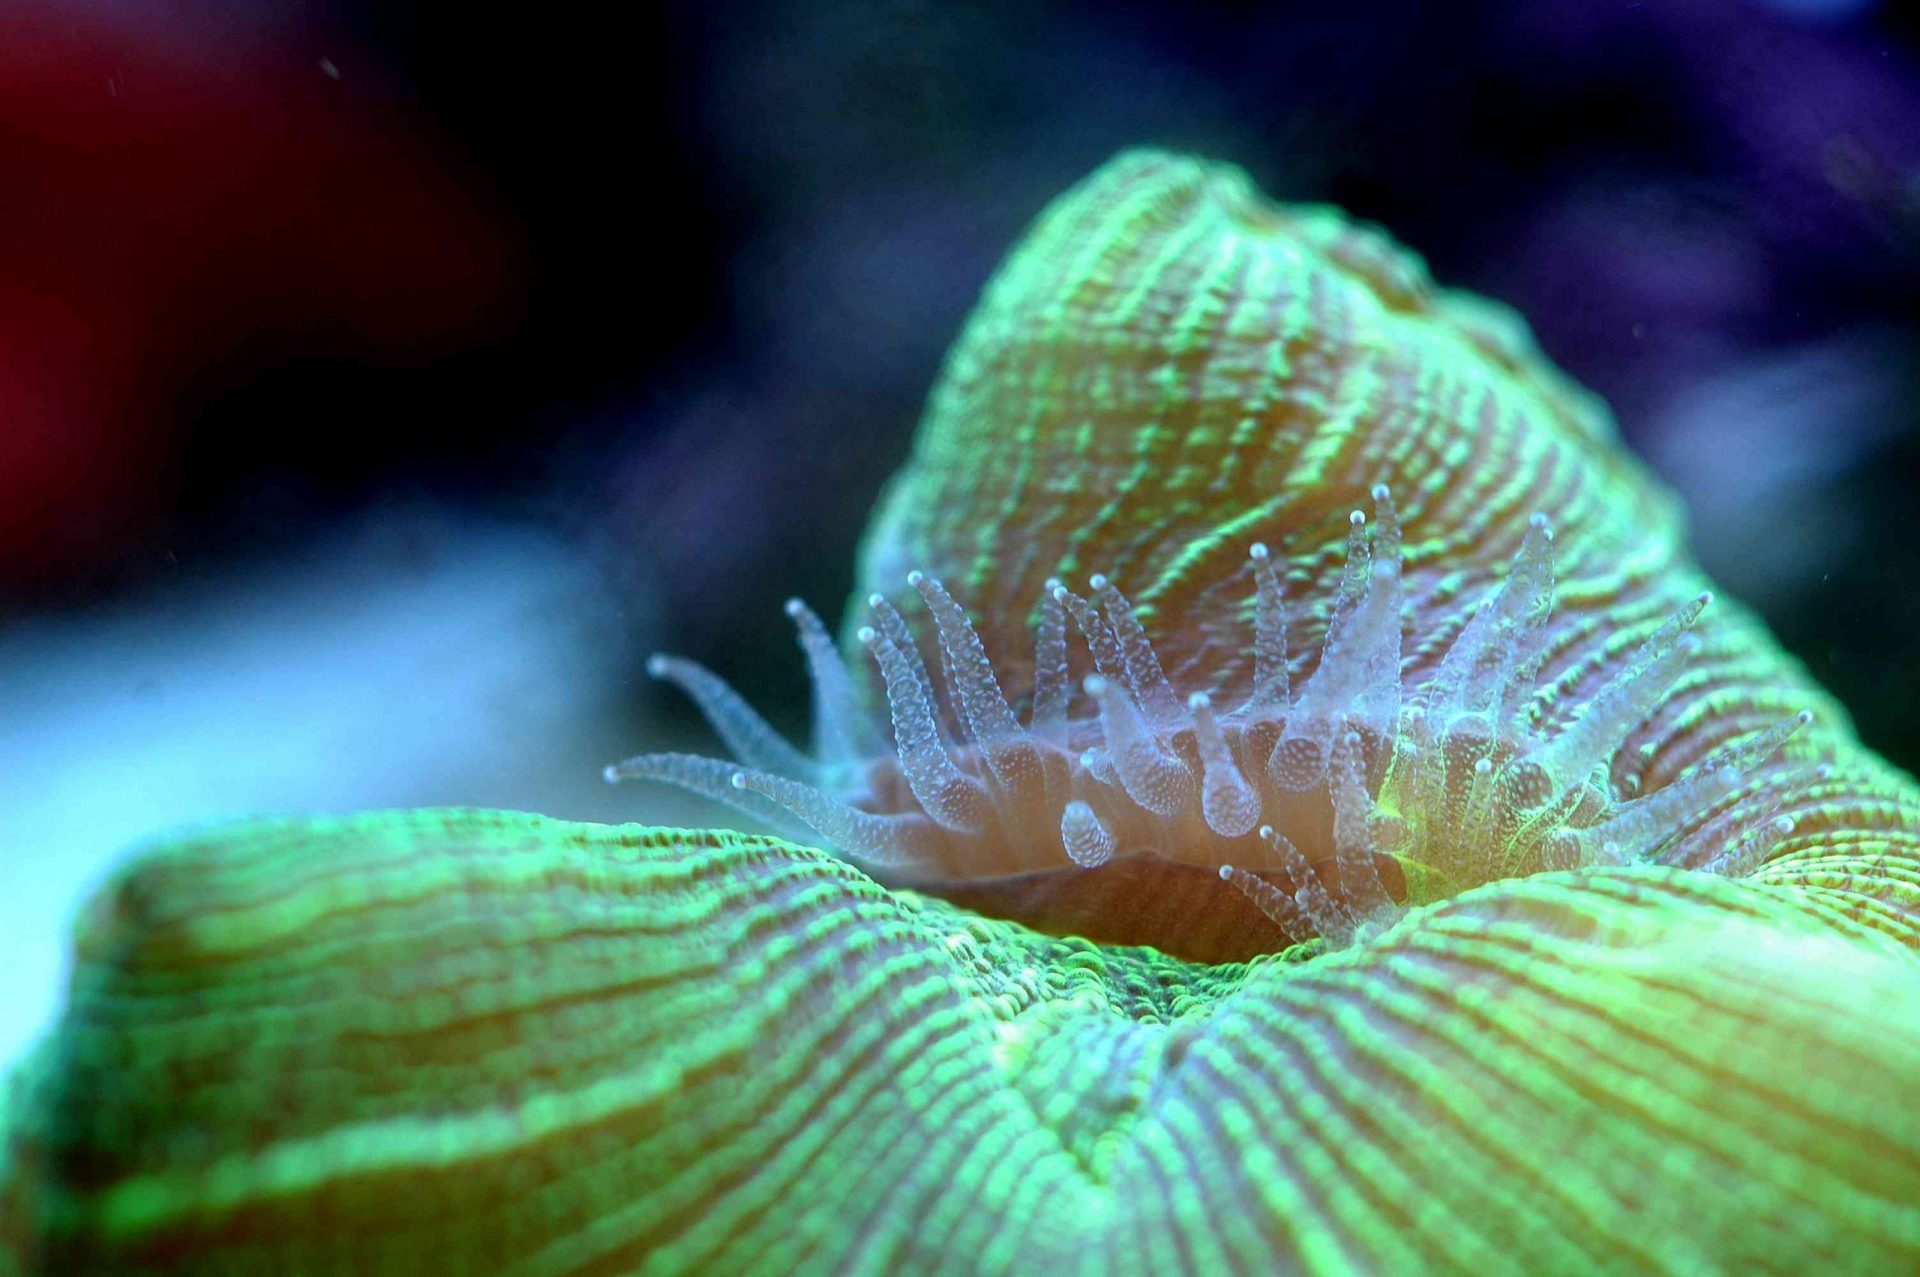 Coral cerebro abierto verde metálico con tentáculos transparentes visibles